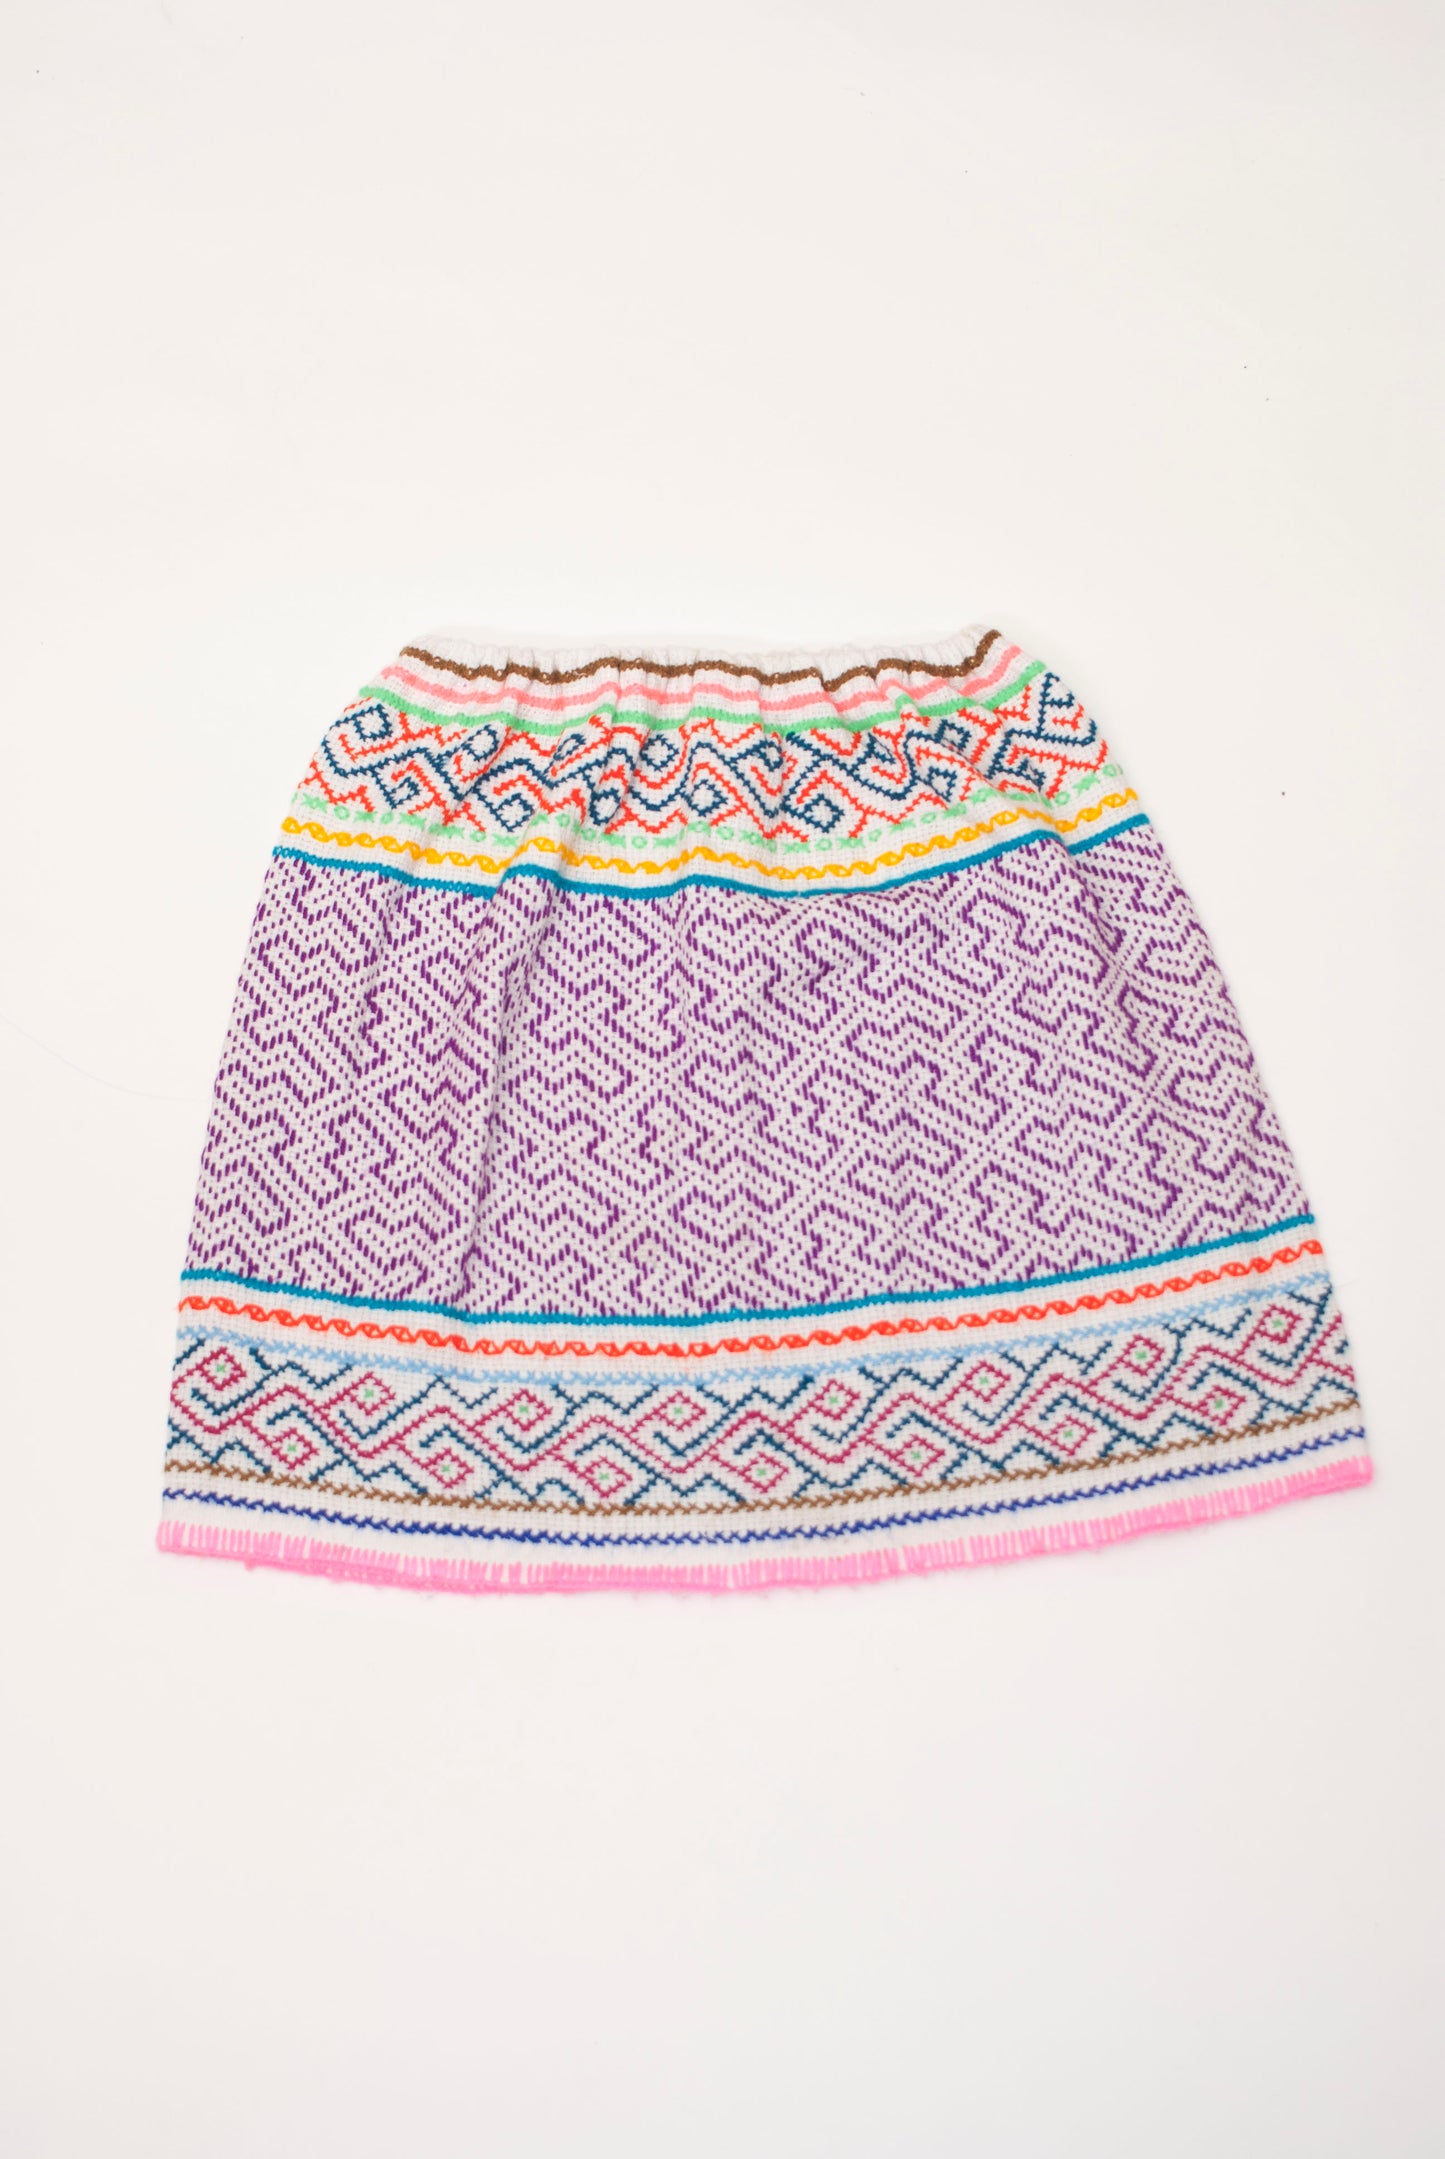 Shipibo Kids Skirt